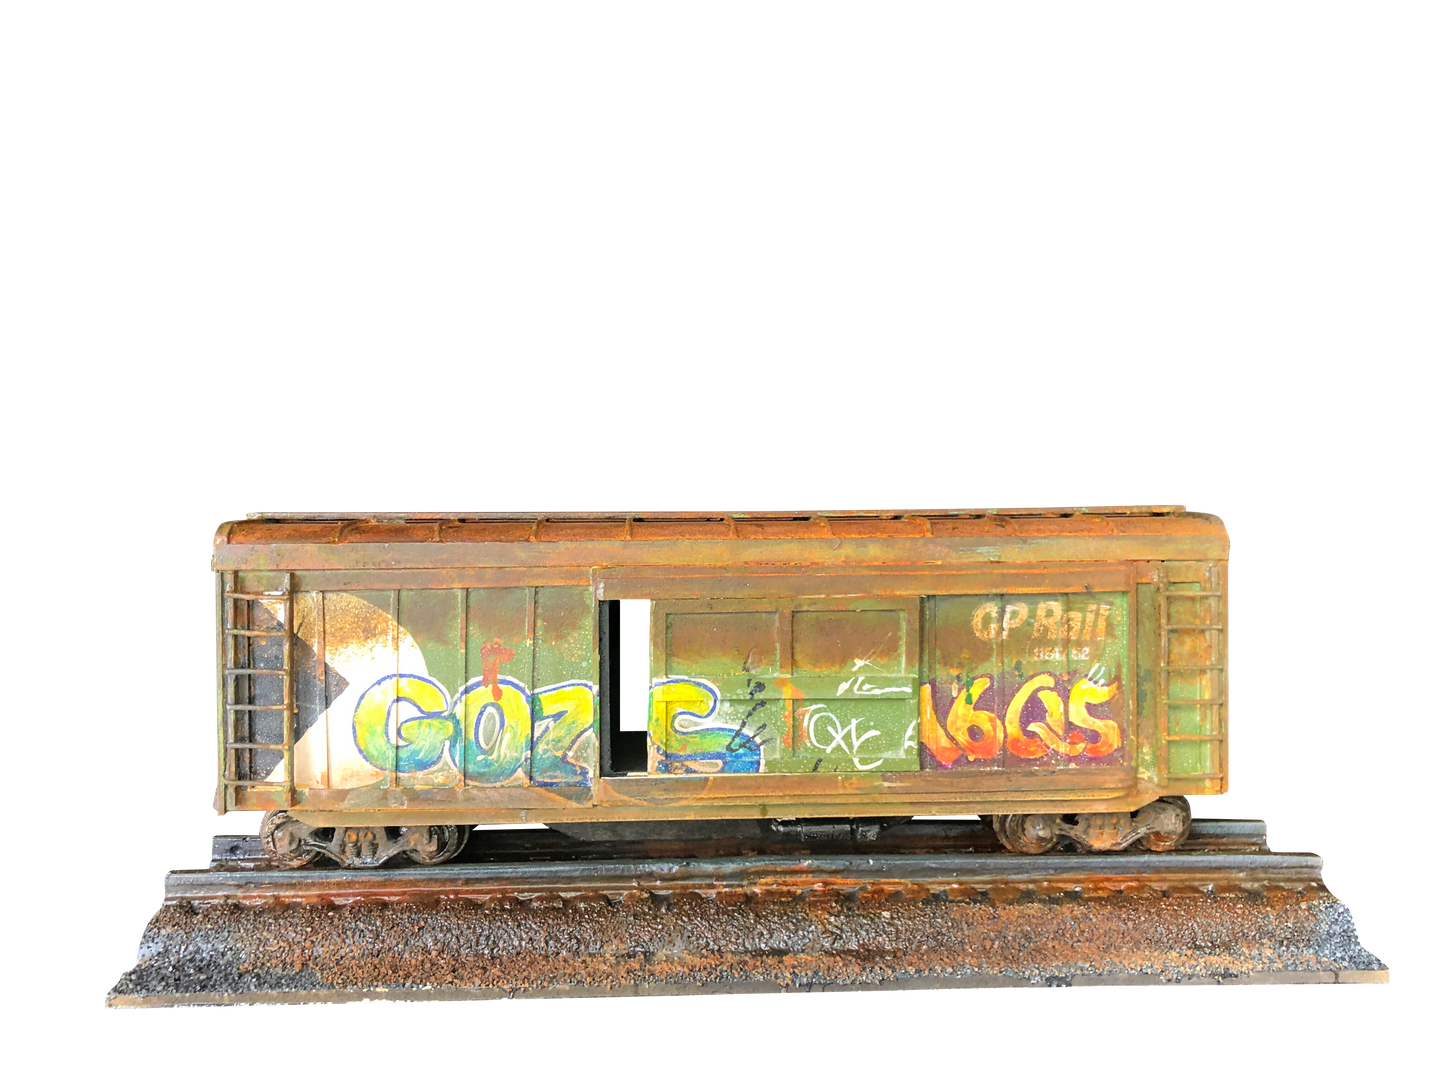 Graffiti Railroad Box Car Handmade Custom Art Decor Piece